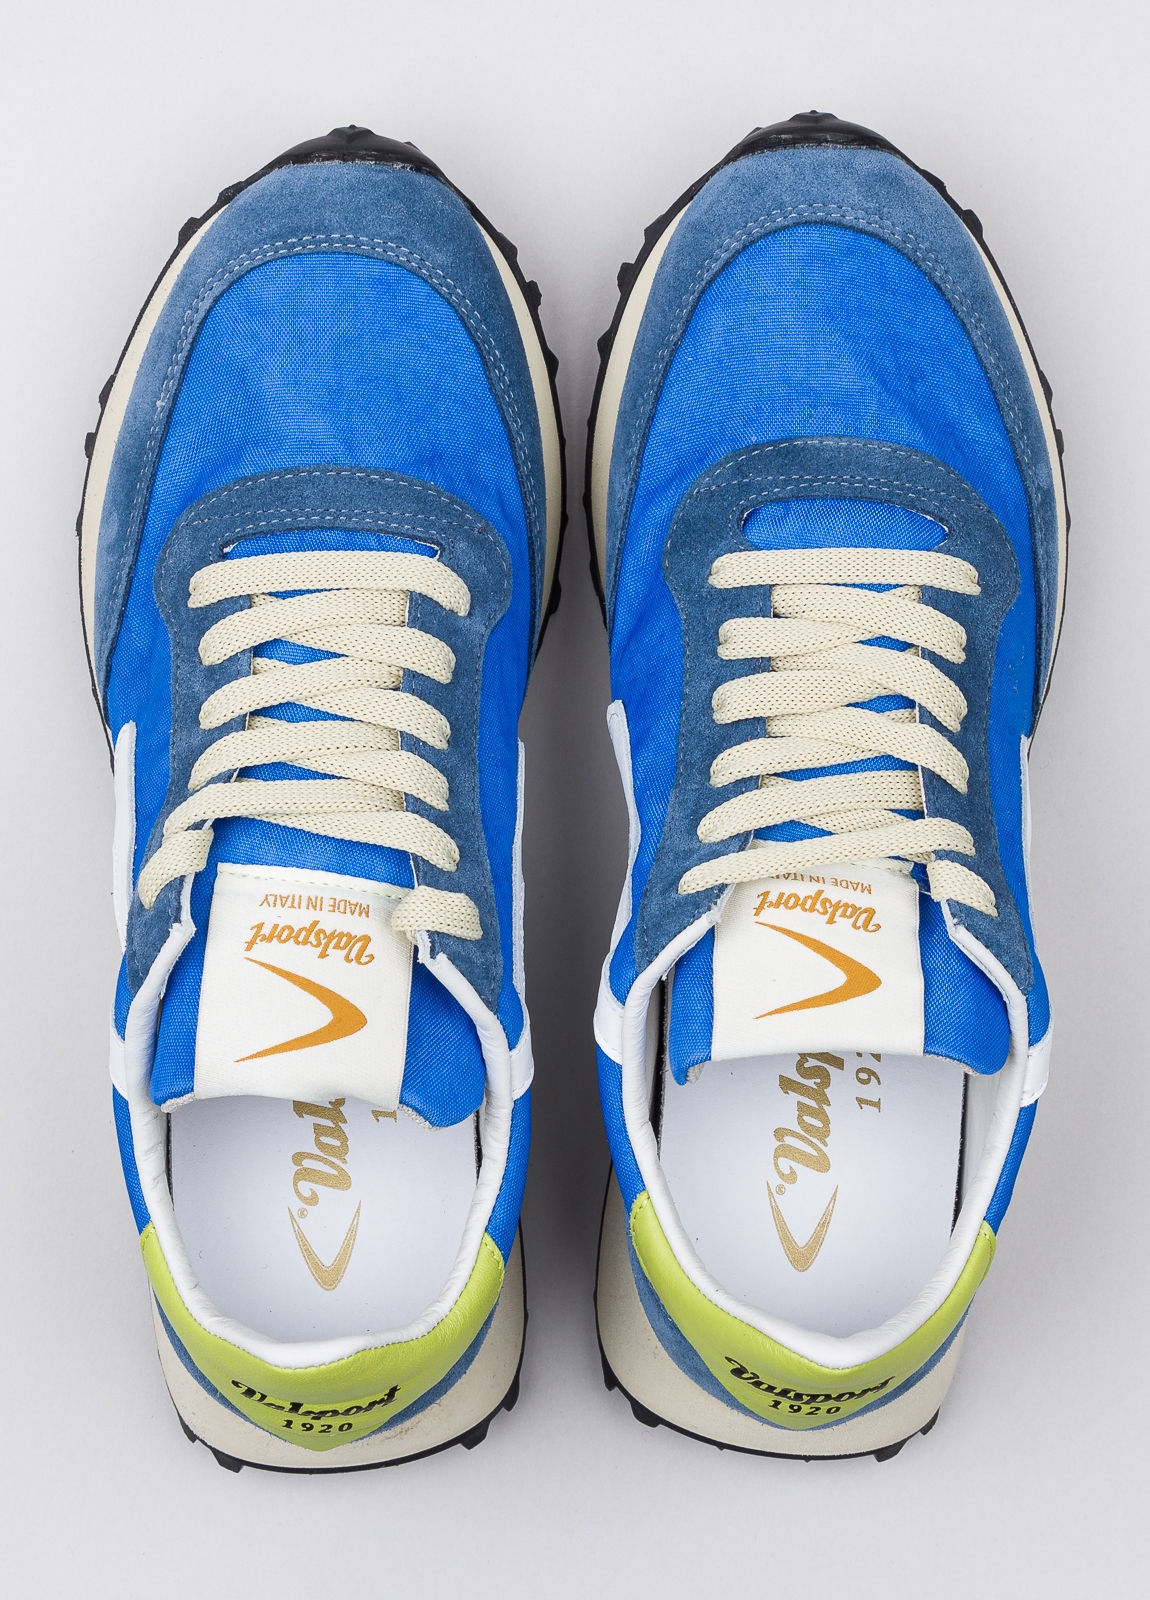 Sneakers VALSPORT azul con detalles blanco y amarillo - Ítem1